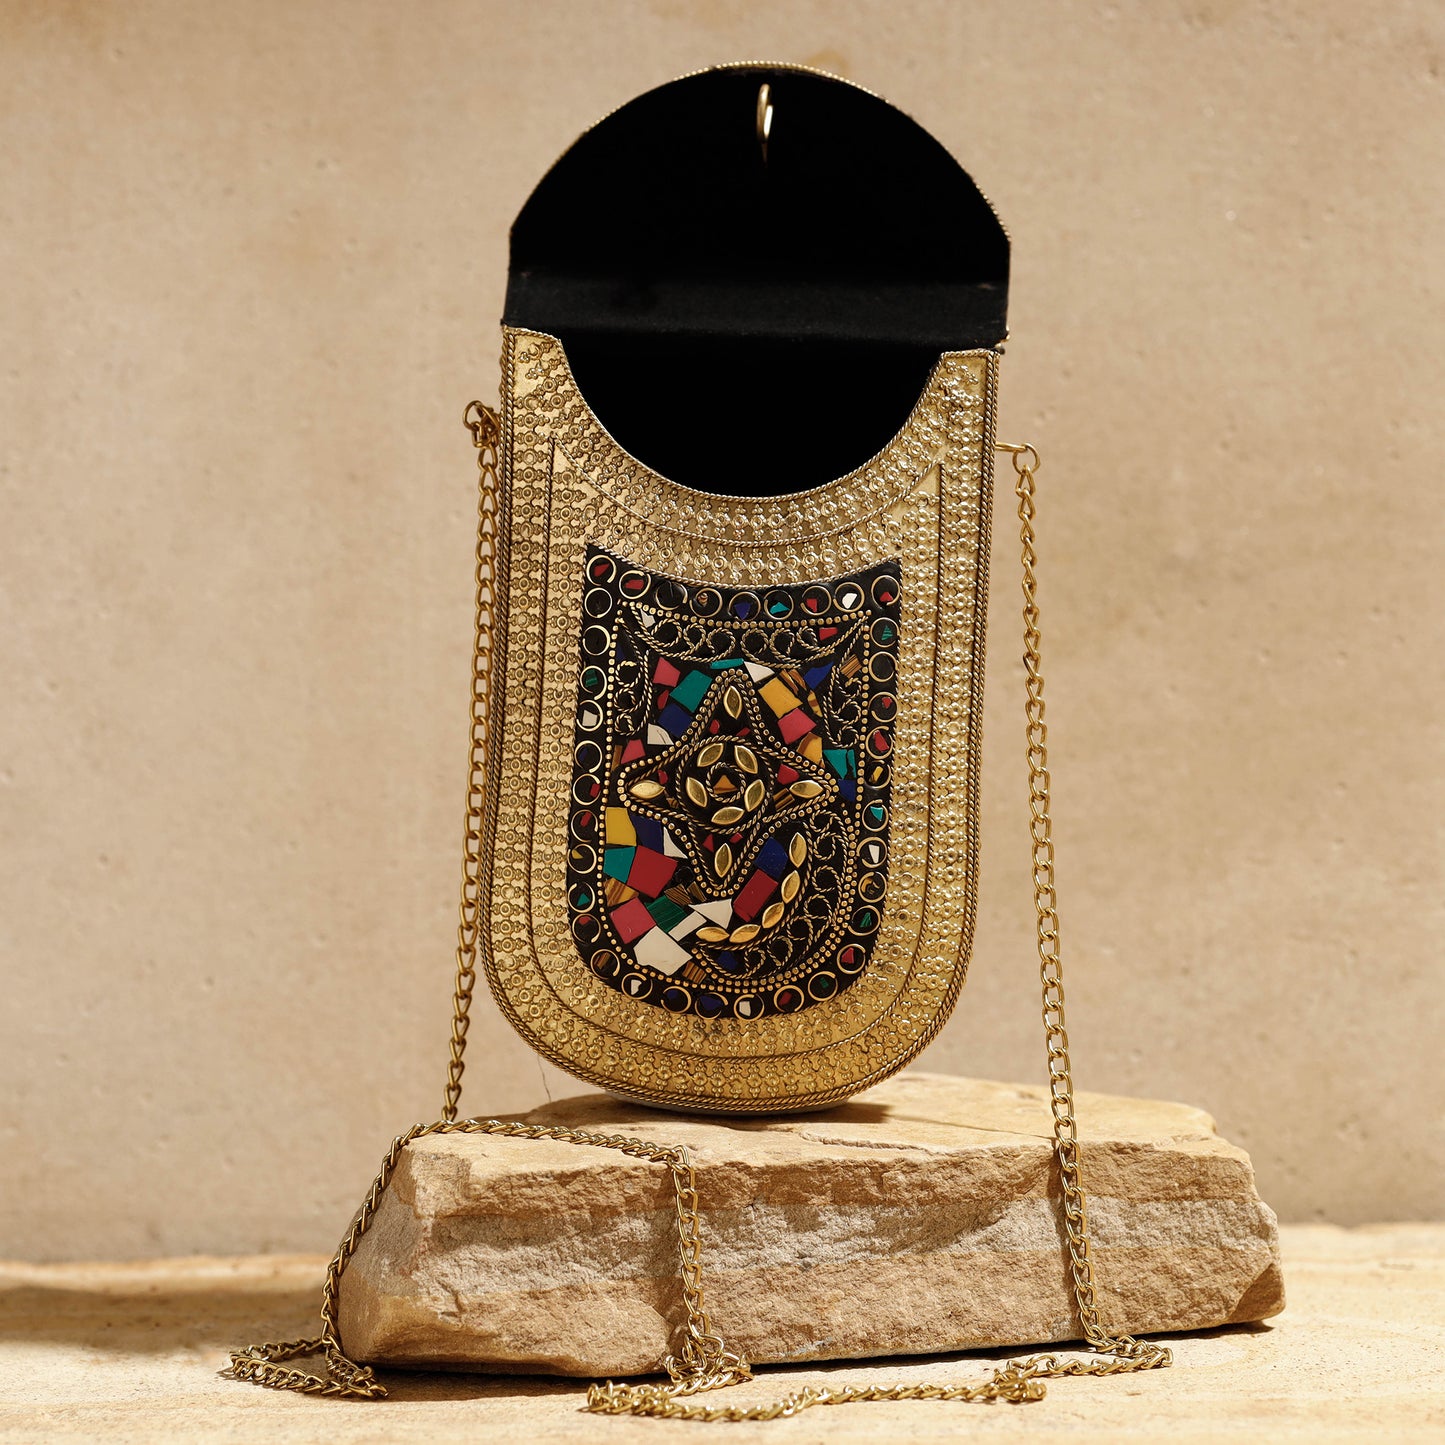 Beige - Handmade Vintage Metal & Mosaic Stone Clutch / Sling Bag